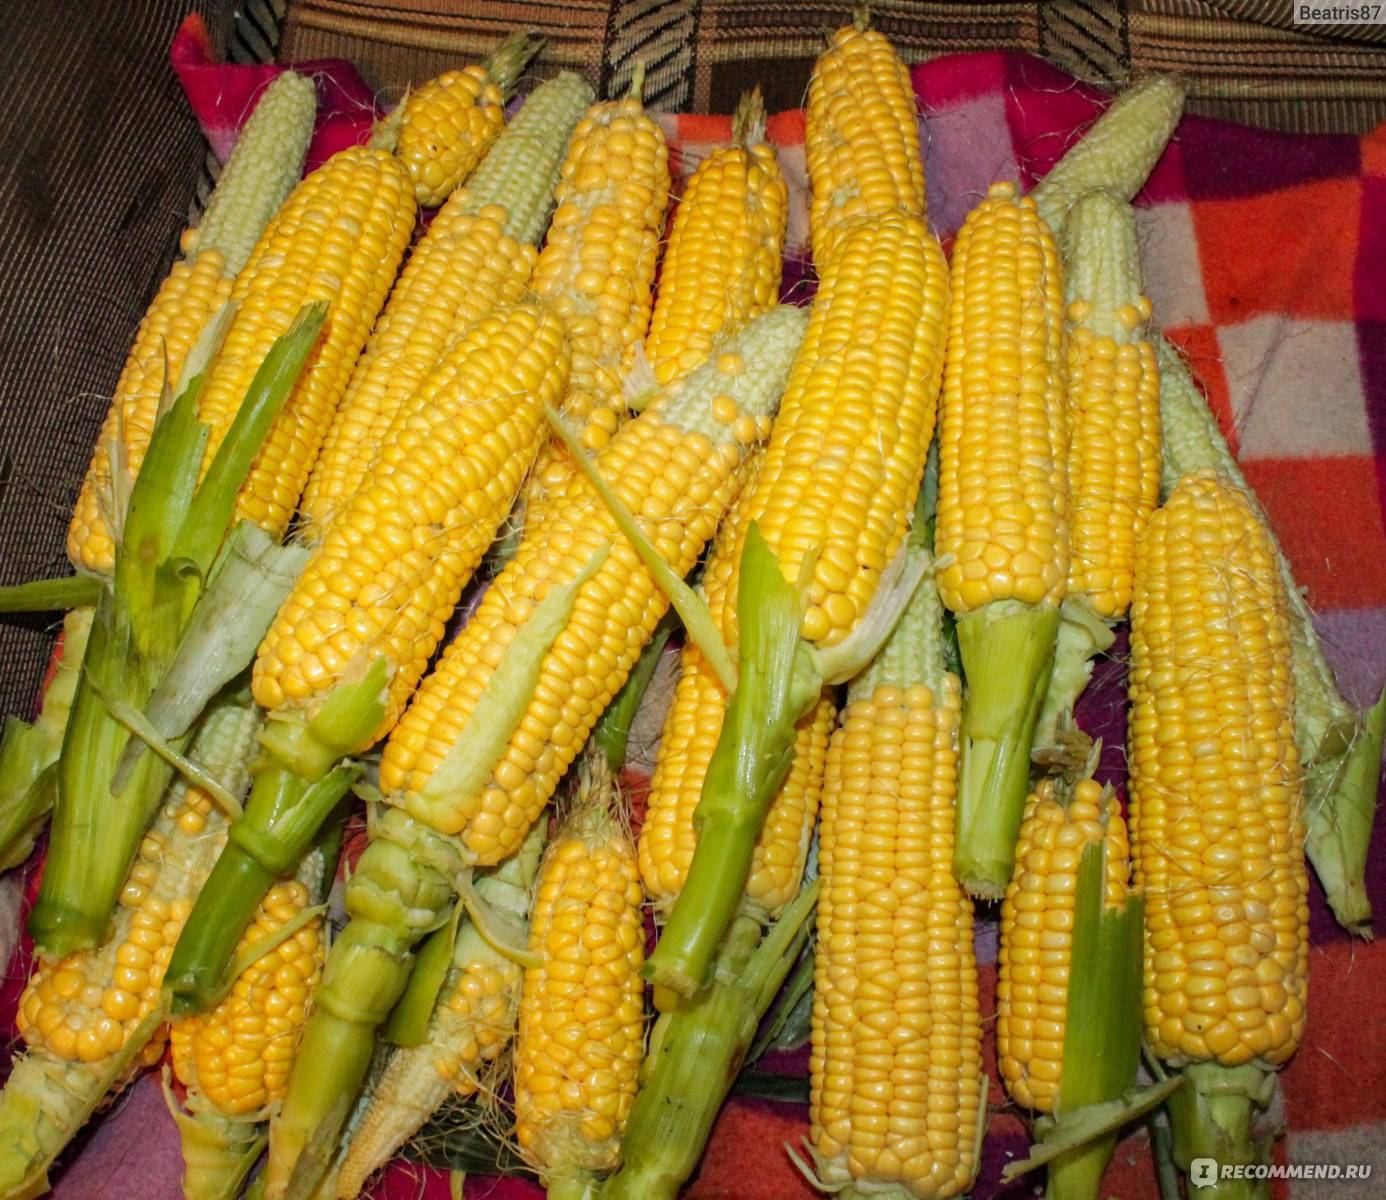 Выбор лучшего сорта кукурузы. лучшее время для посадки семян на участке - огород, сад, балкон
 - 9 ноября
 - 43149779743 - медиаплатформа миртесен